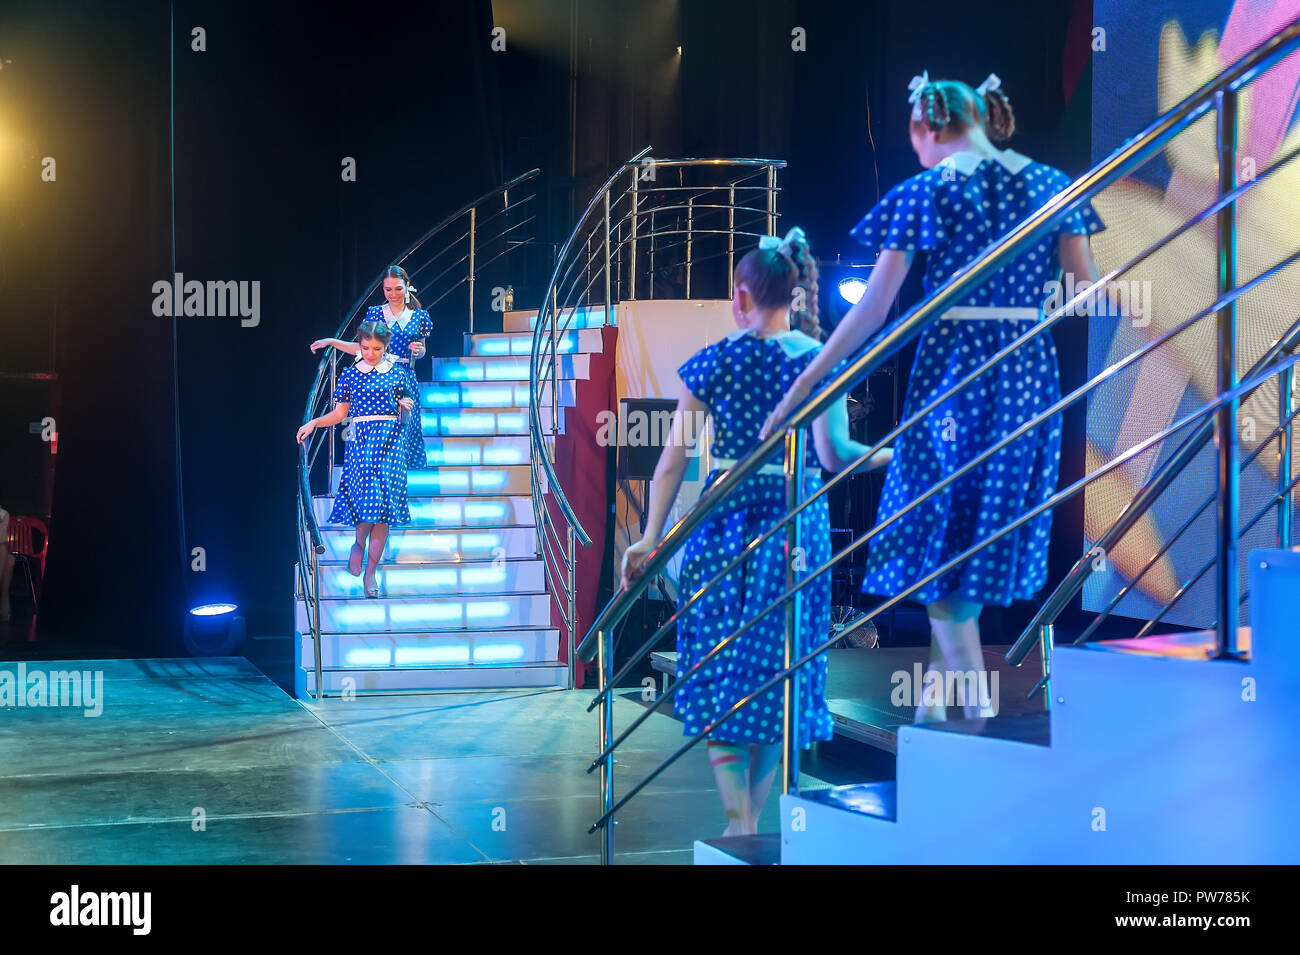 Tioumen, Russie - 16 Avril 2014 : La concurrence des jeunes artistes la chanson ne connaît pas de limite dans le théâtre dramatique. Quatre belles chanteuses chantant un Banque D'Images